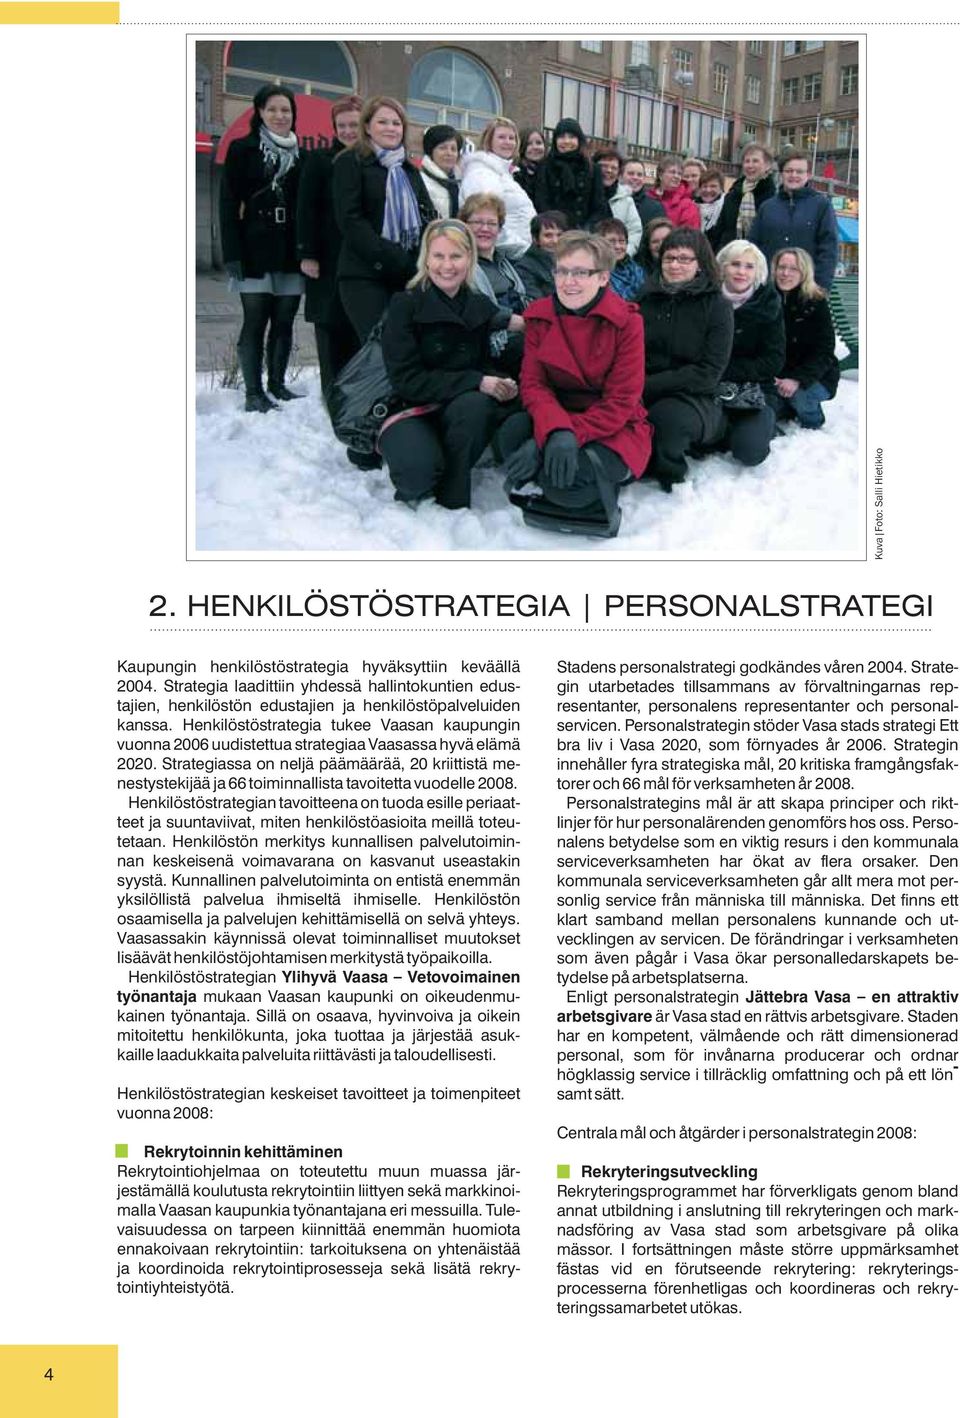 Henkilöstöstrategia tukee Vaasan kaupungin vuonna 2006 uudistettua strategiaa Vaasassa hyvä elämä 2020.